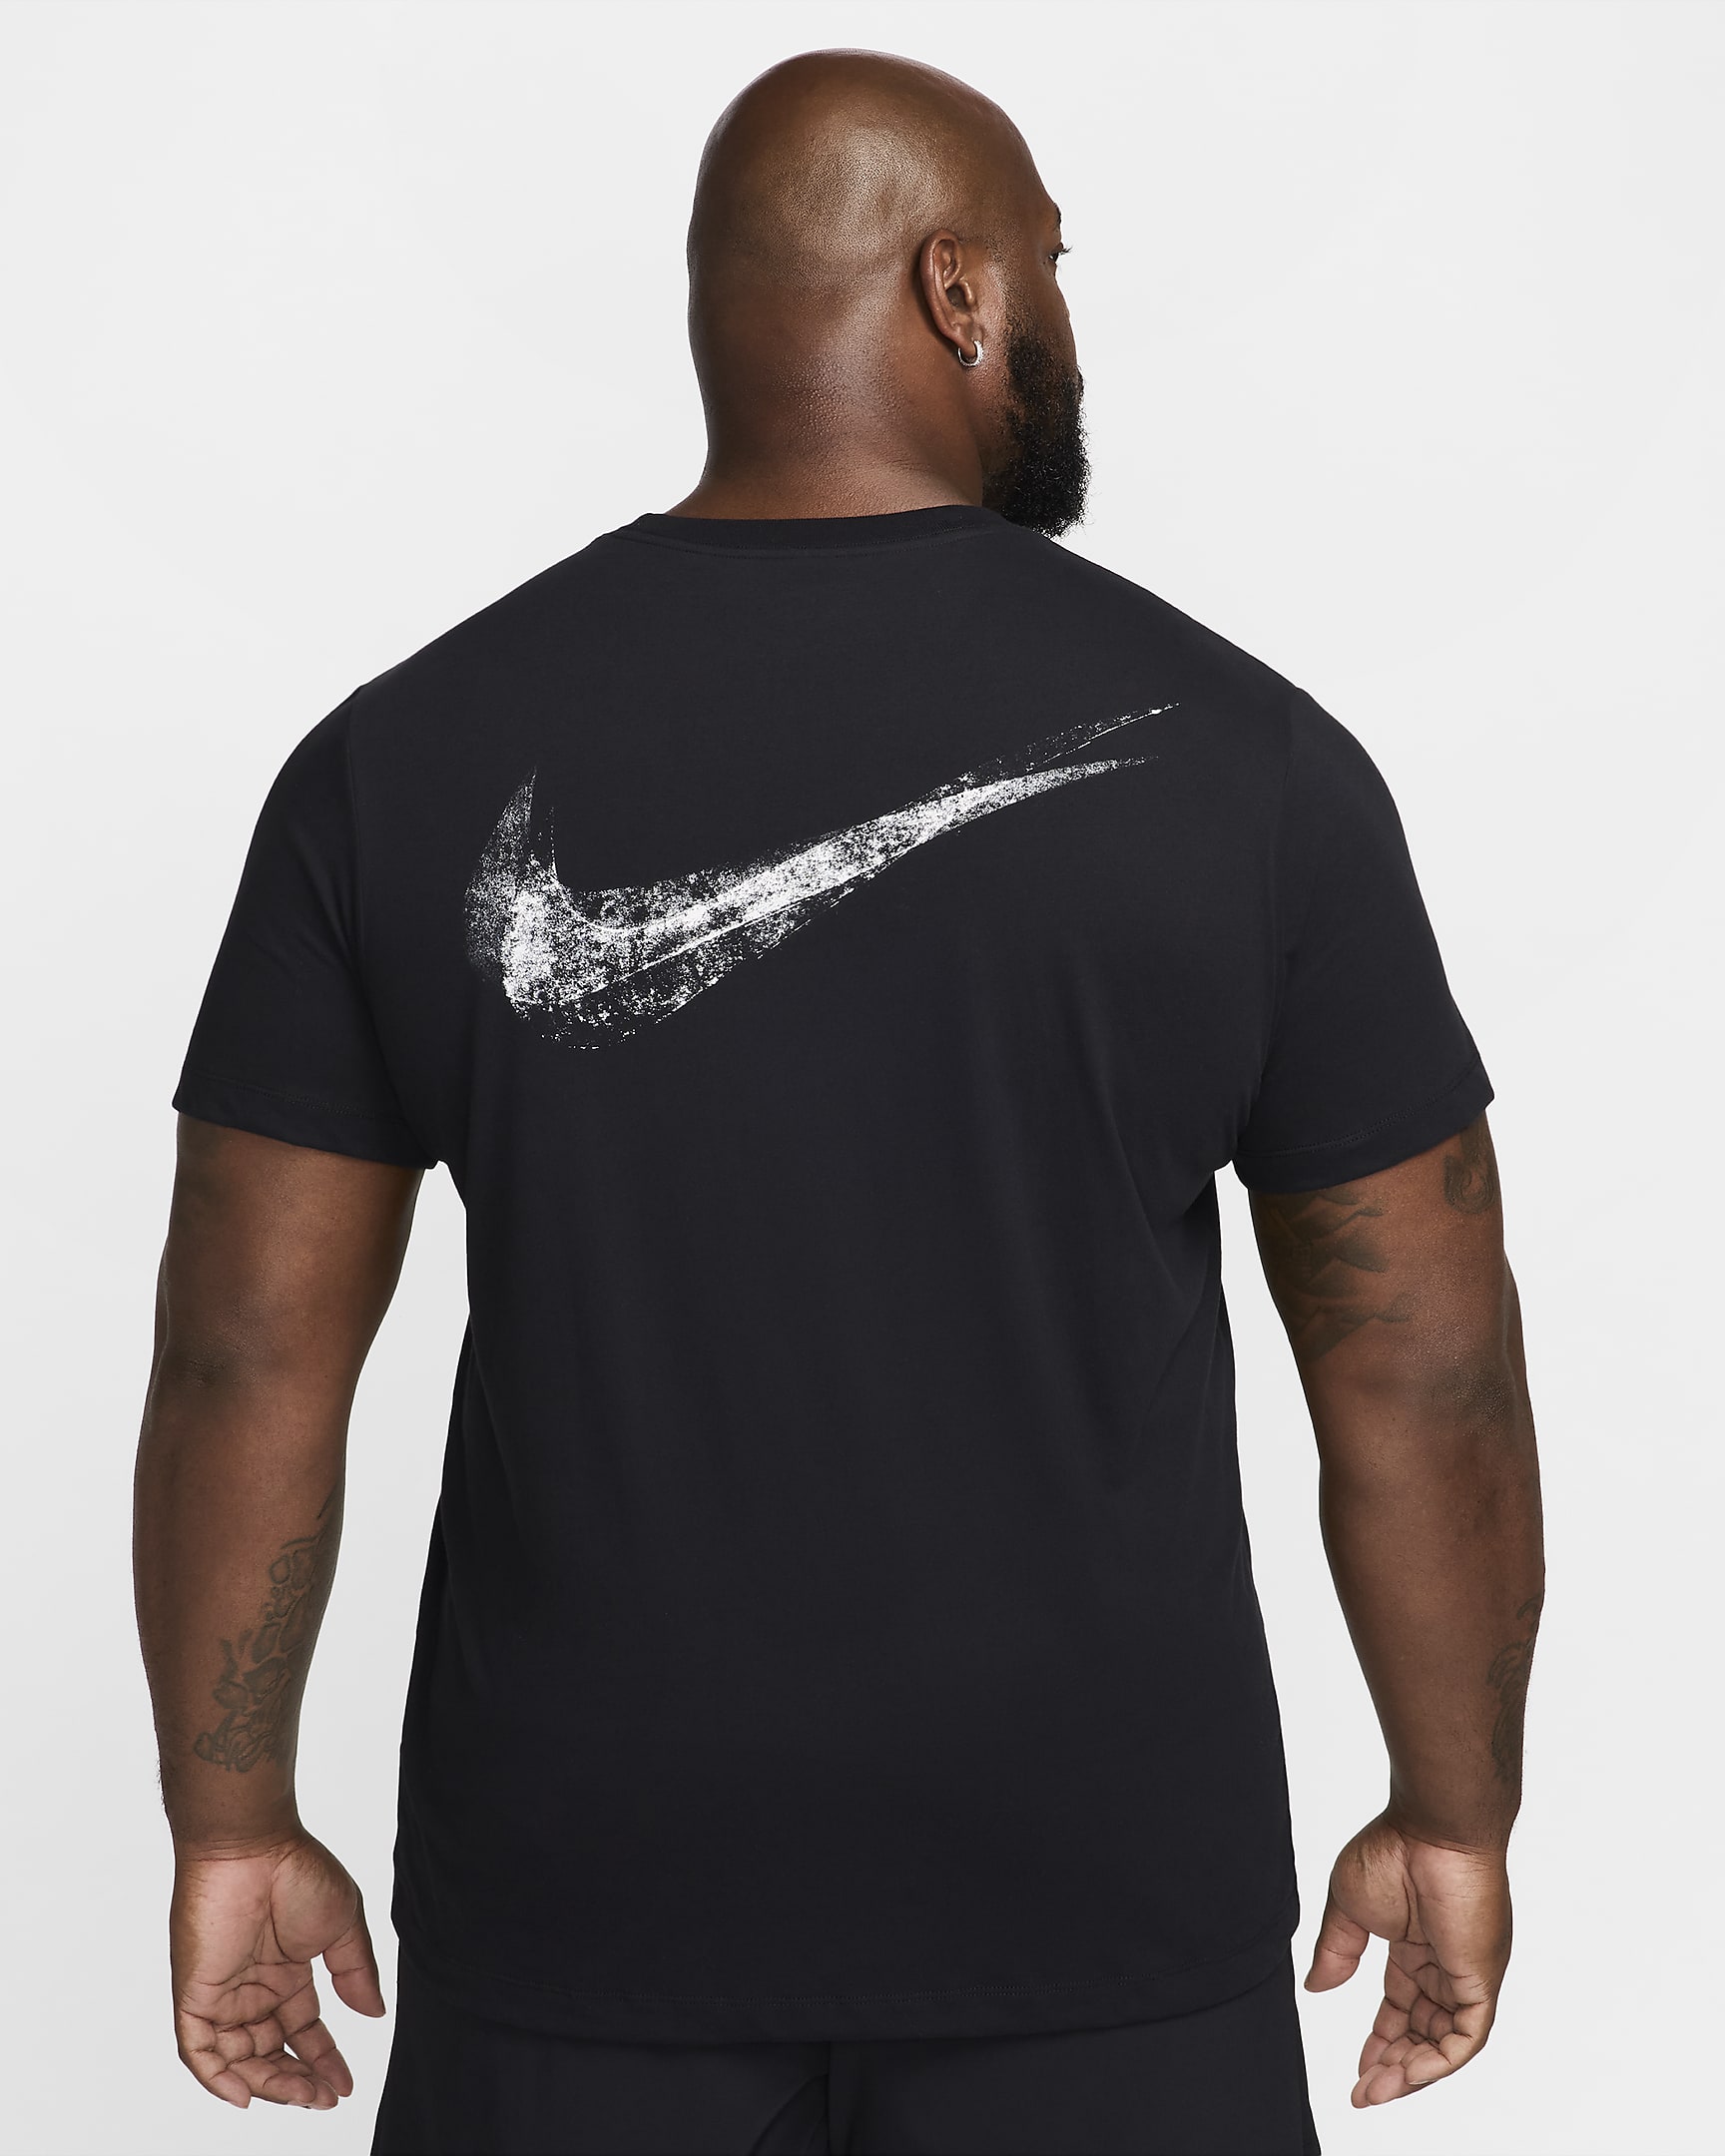 Nike Men's Dri-FIT Fitness T-Shirt - Black